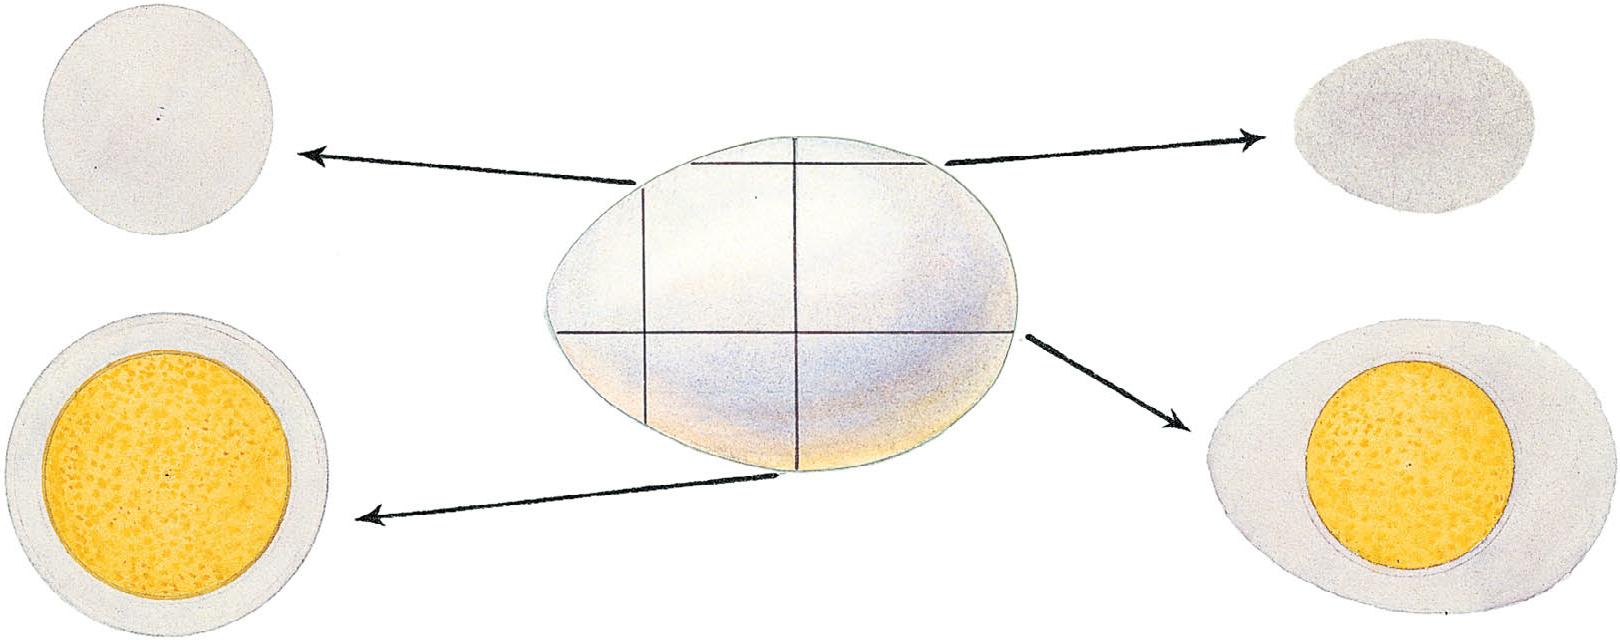 卵圆形细胞不同方位的切面图